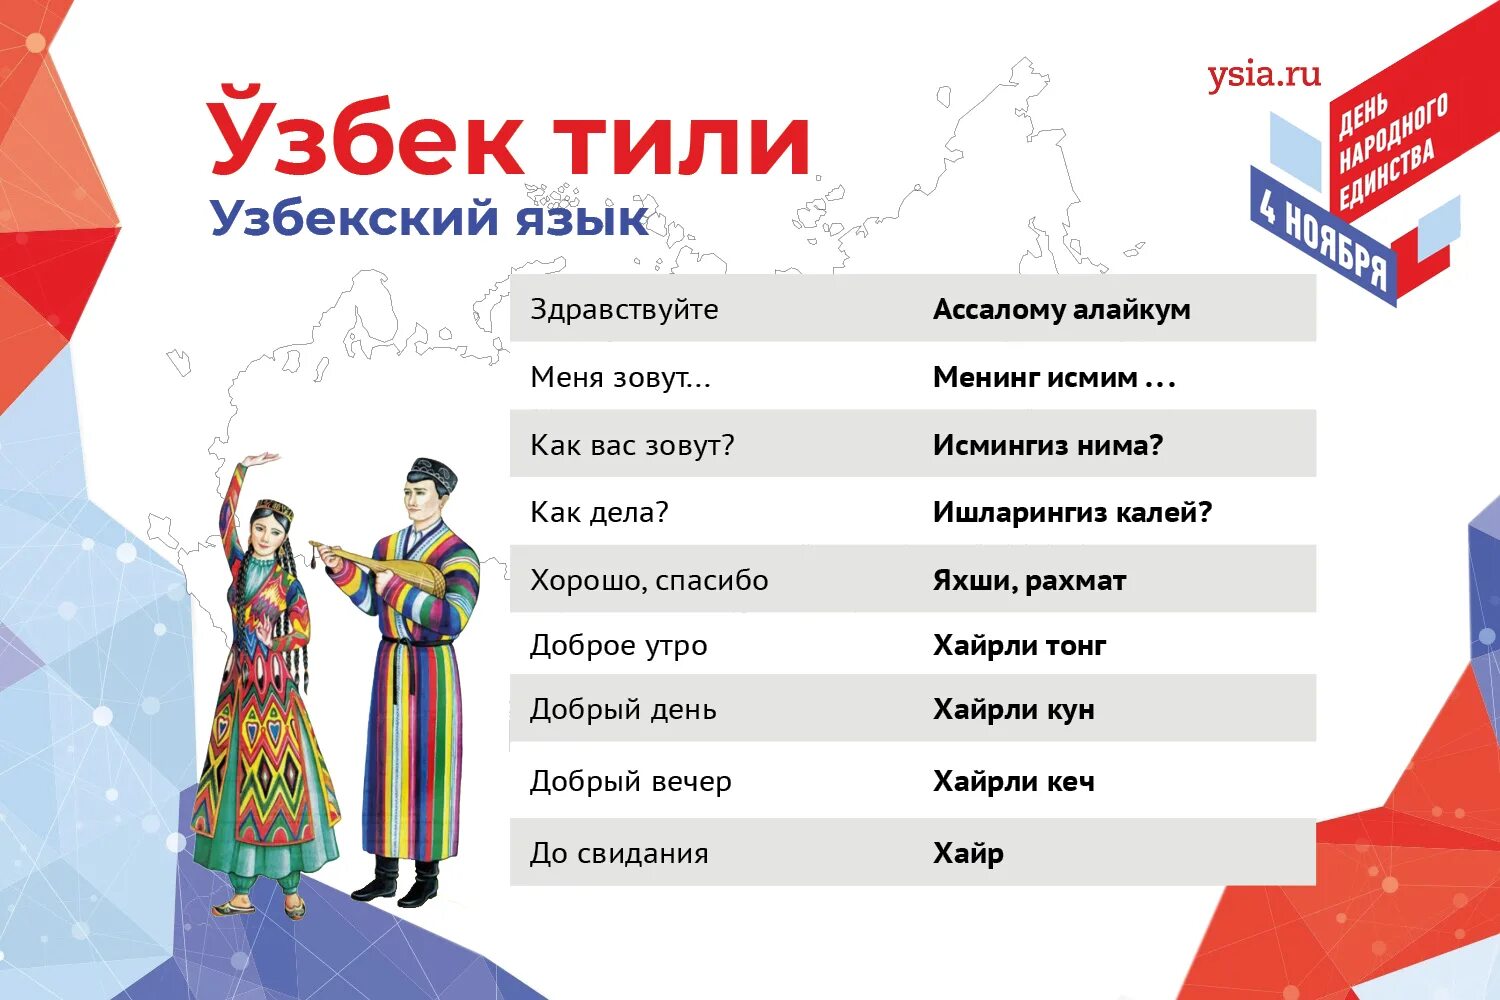 Узбекский язык. Учить узбекский язык. Изучаем семью узбекский язык. Слова на узбекском языке.